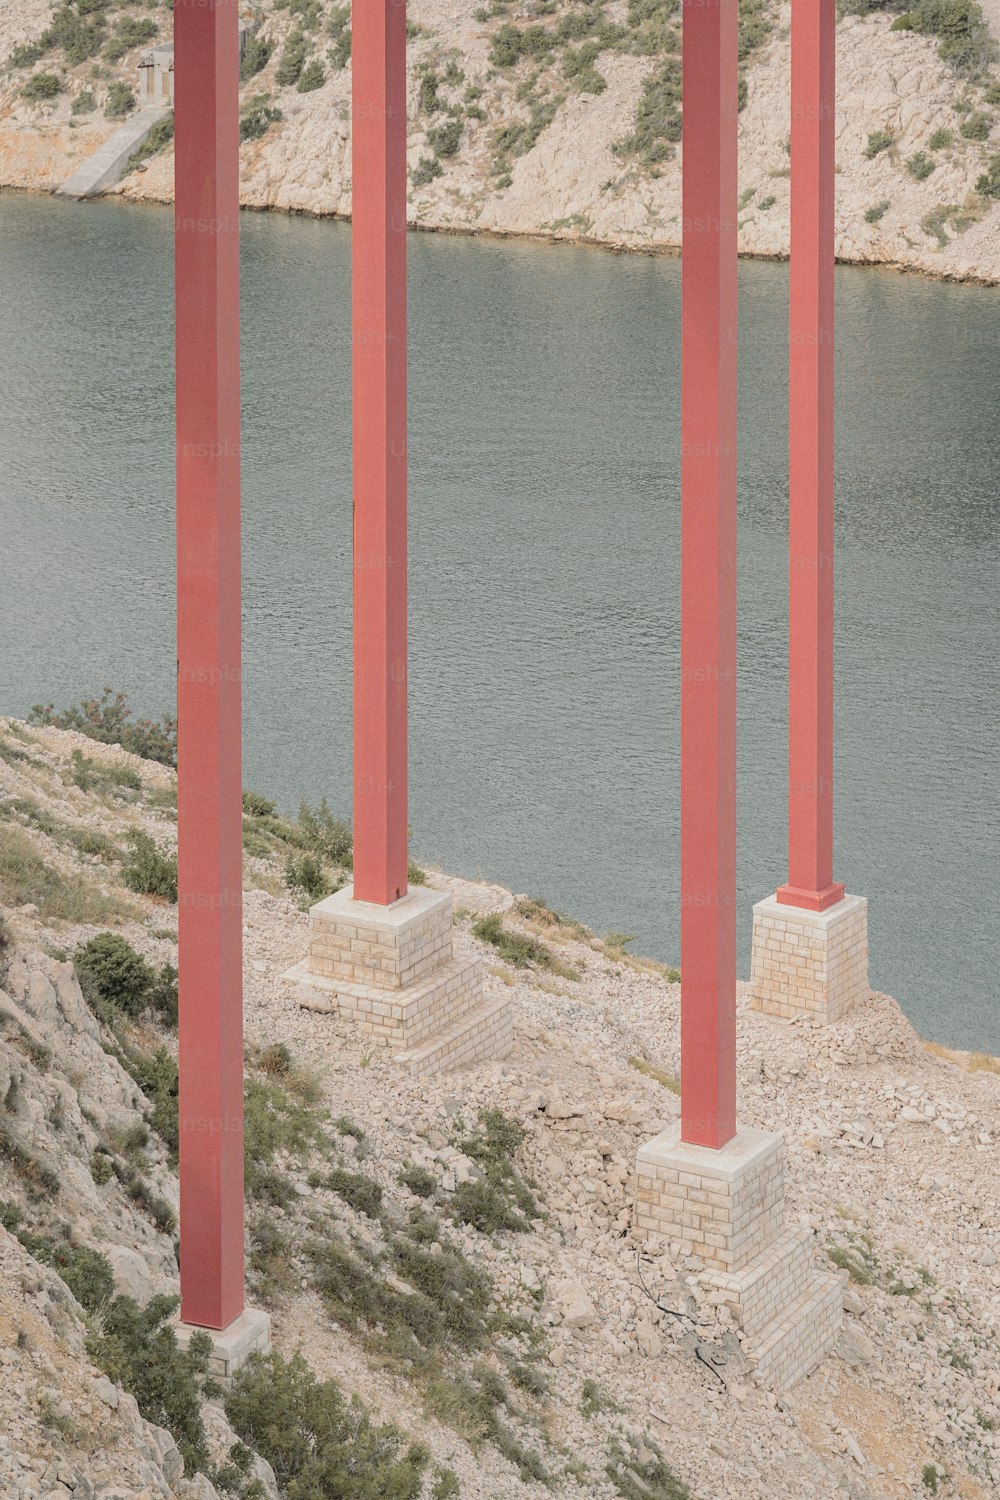 水域の横にある赤い柱の列